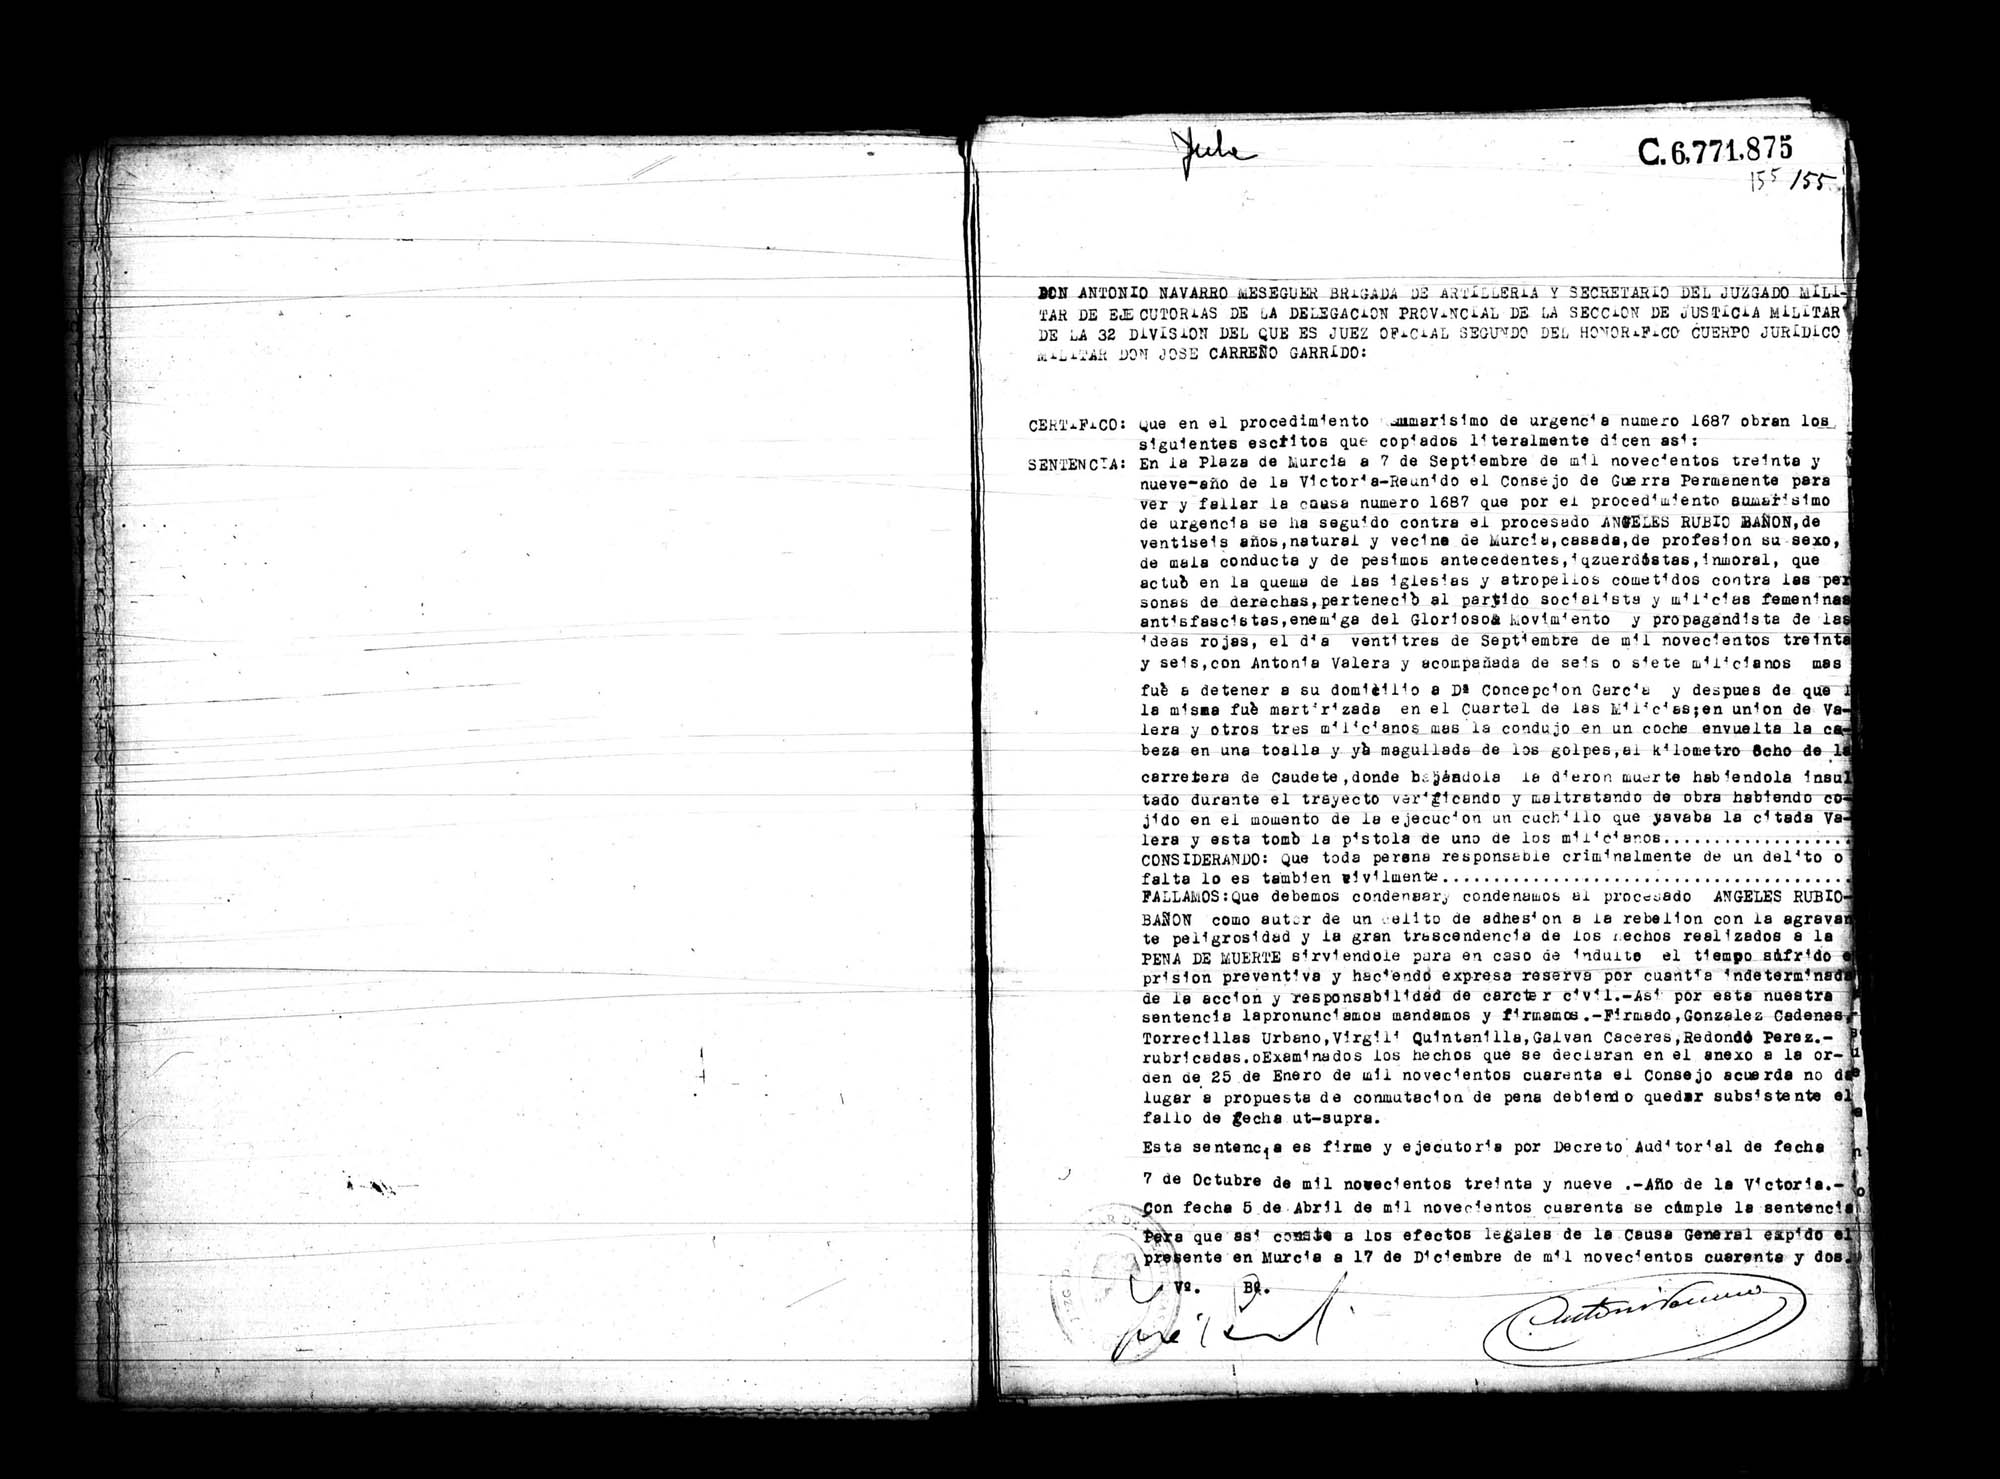 Certificado de la sentencia de pena de muerte pronunciada contra Ángeles Rubio Bañón, vecina de Murcia, por el Consejo de Guerra Permamente de esa plaza el 7 de septiembre de 1939, en la causa 1687, por procedimiento sumarísimo.